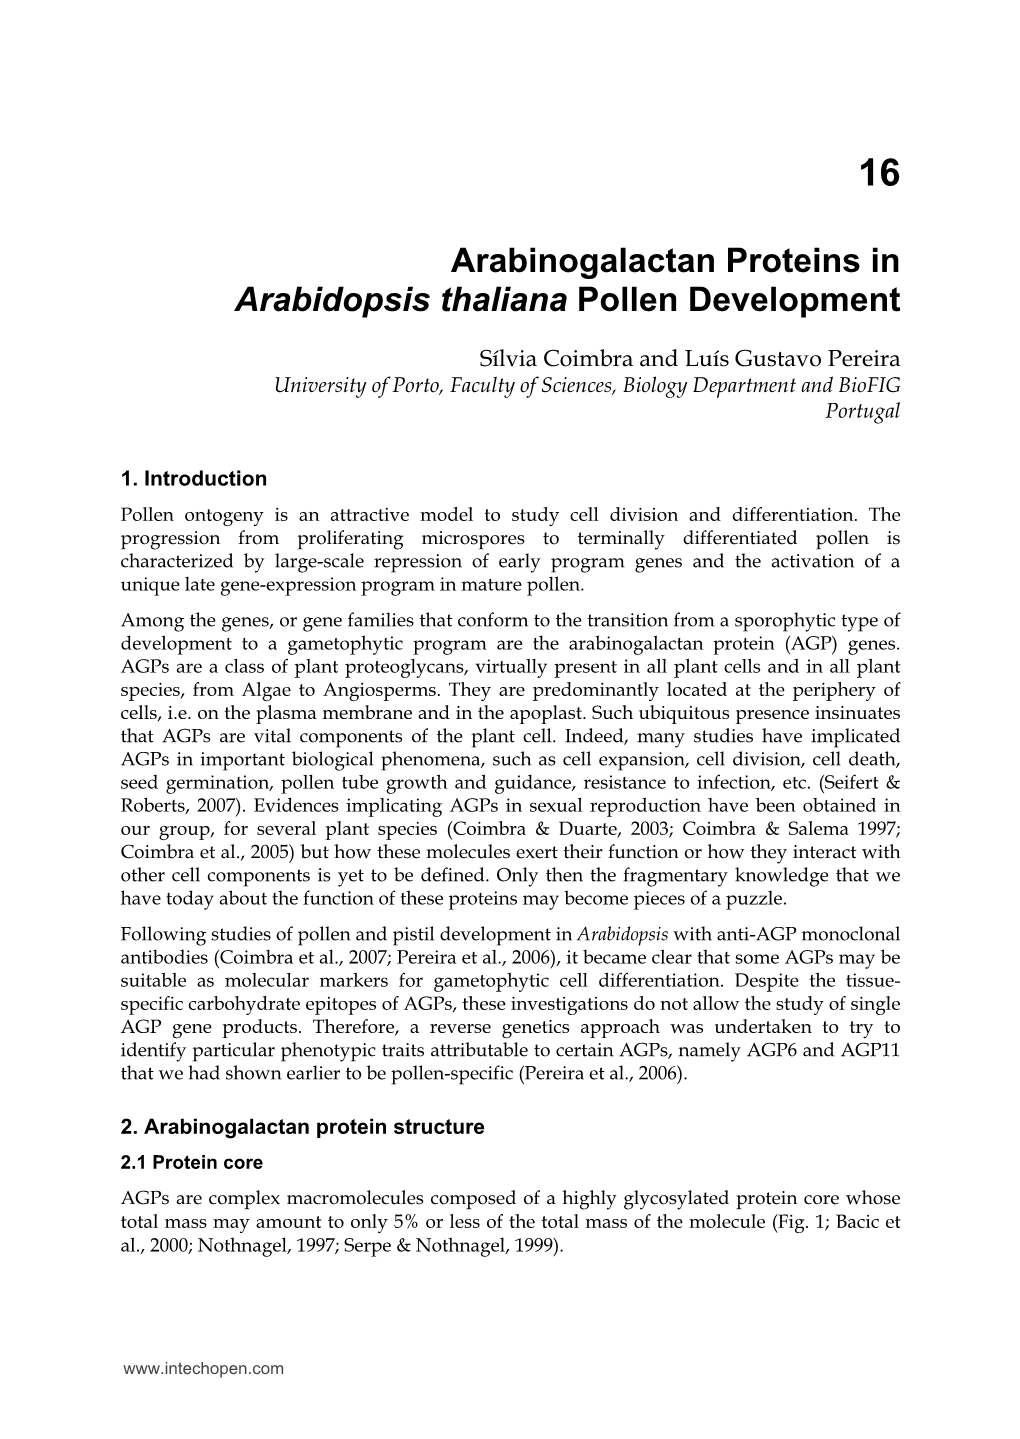 Arabinogalactan Proteins in Arabidopsis Thaliana Pollen Development